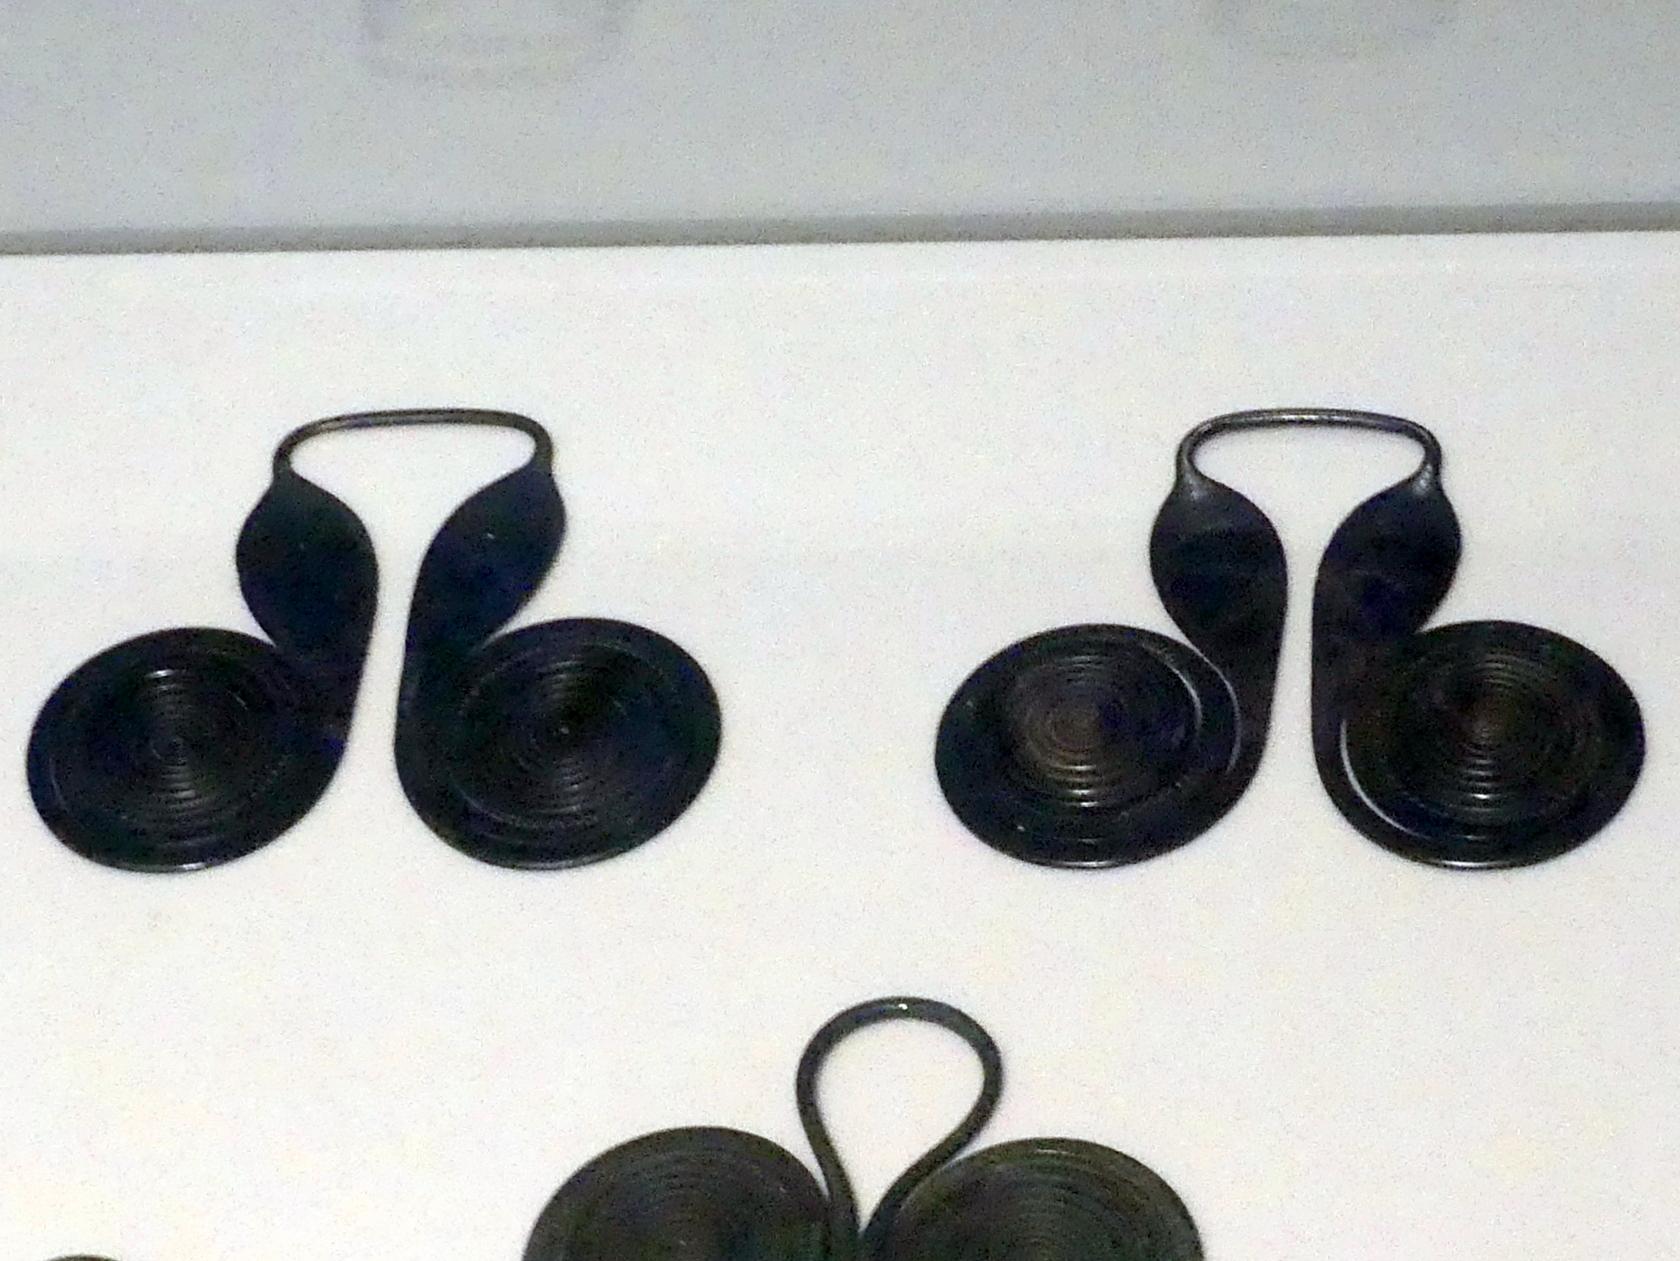 Brillenspiralen, Mittlere Bronzezeit, 3000 - 1300 v. Chr., 1600 - 1300 v. Chr.